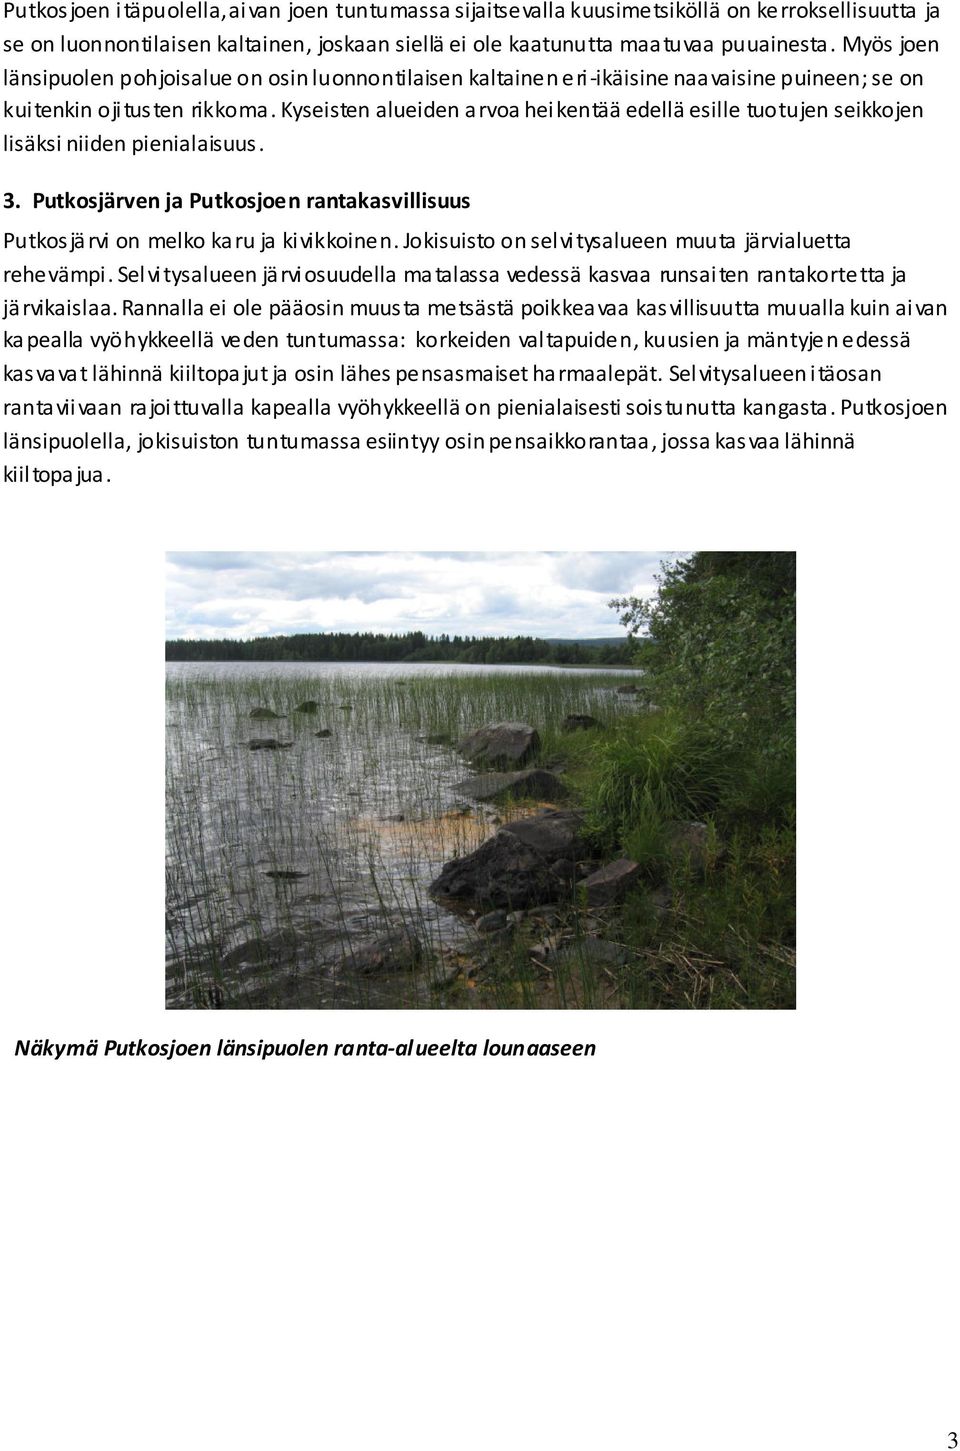 Kyseisten alueiden arvoa heikentää edellä esille tuotujen seikkojen lisäksi niiden pienialaisuus. 3. Putkosjärven ja Putkosjoen rantakasvillisuus Putkosjärvi on melko karu ja kivikkoinen.